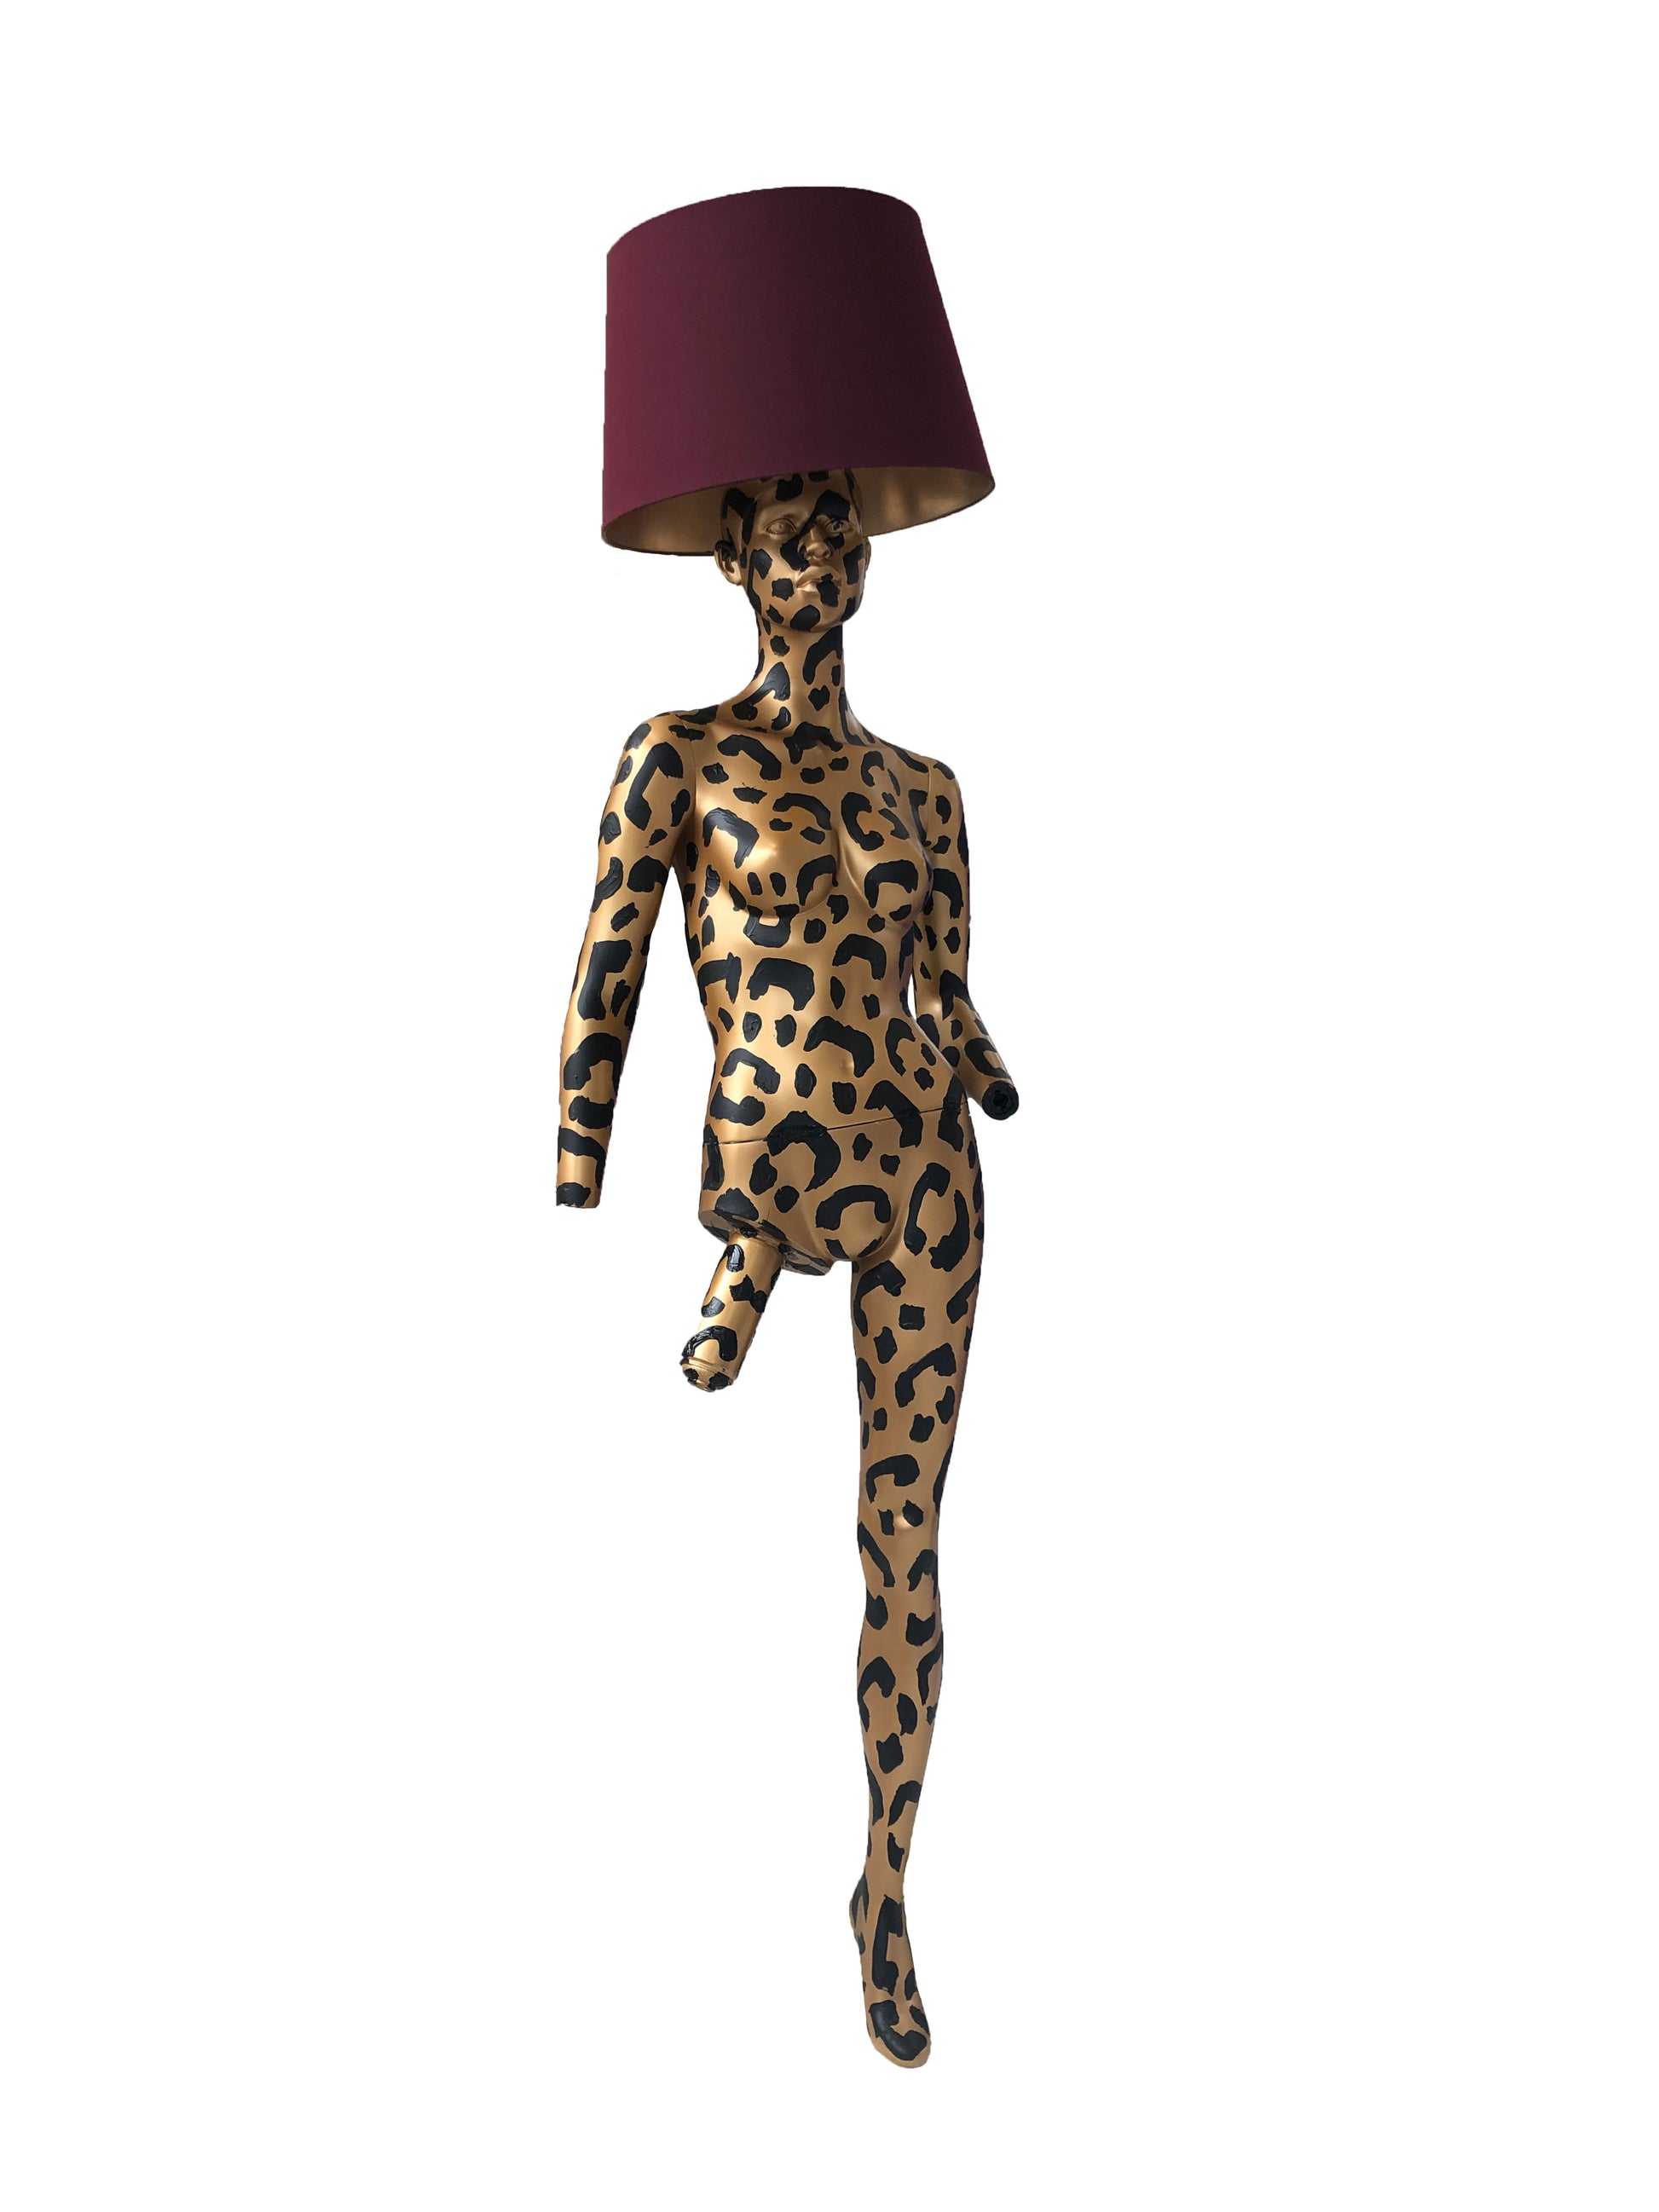 Grace jones - Mannequin Lampe Art Loft